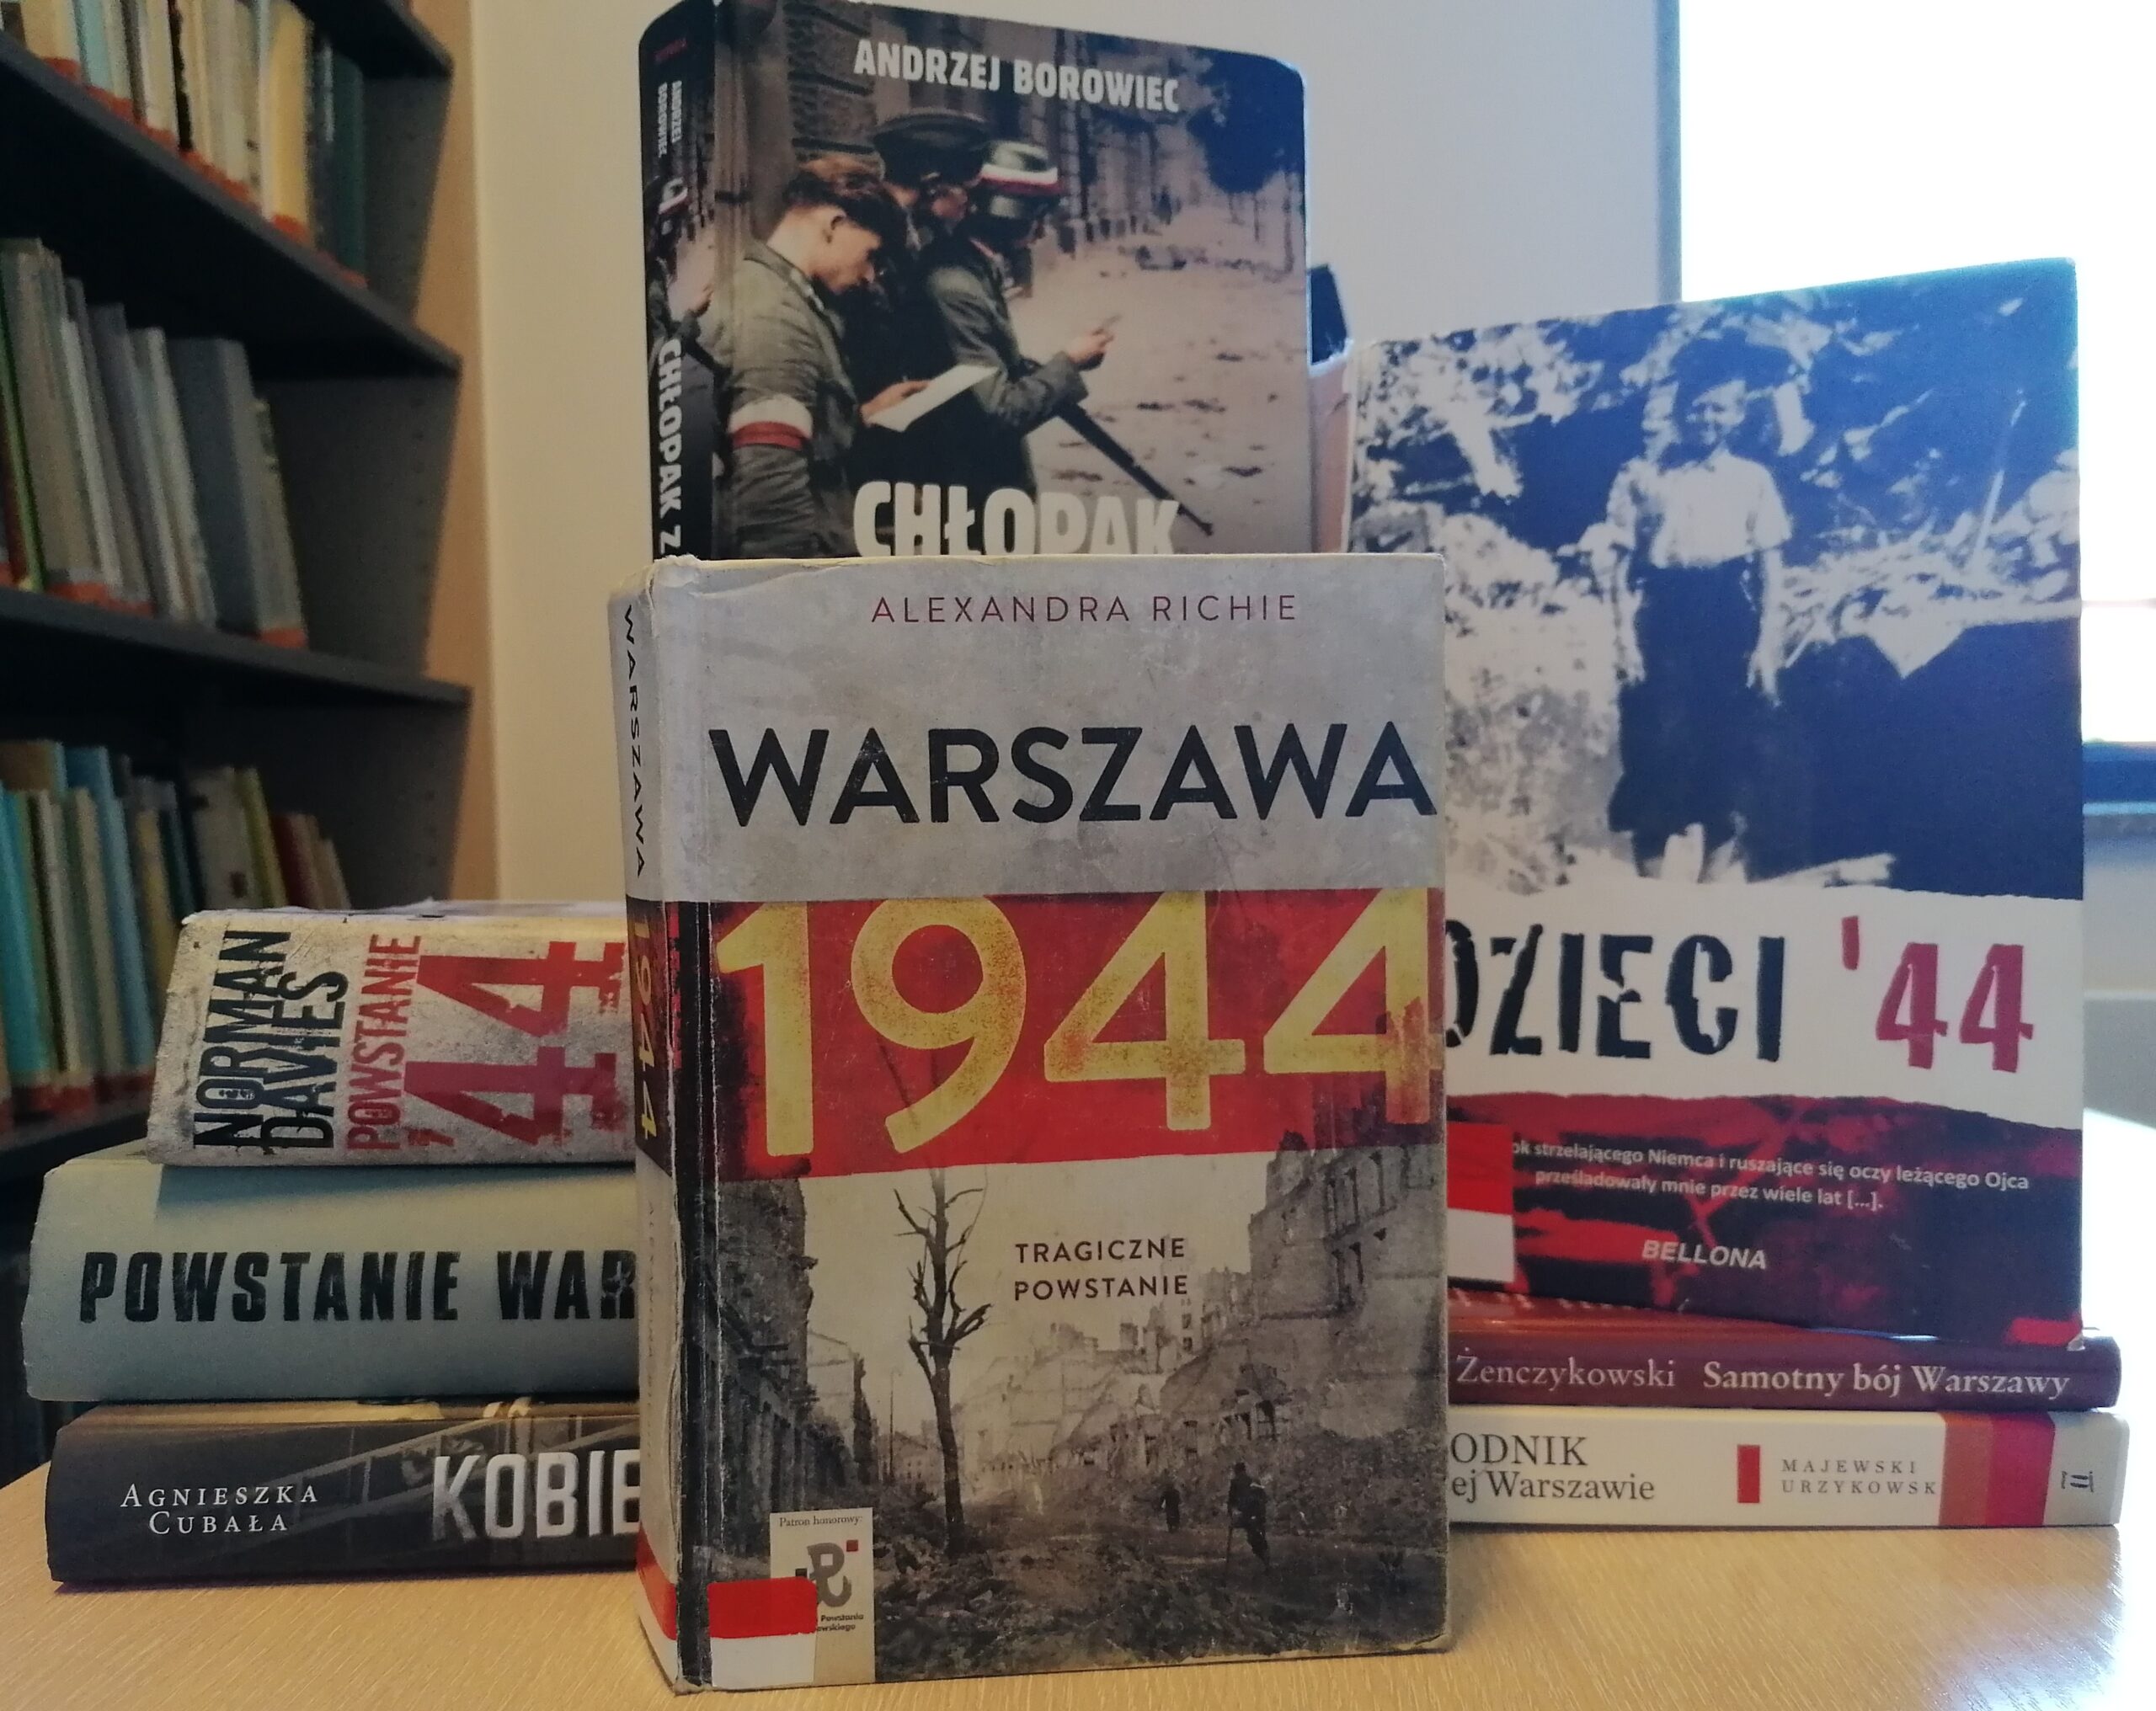 77. rocznica Powstania Warszawskiego